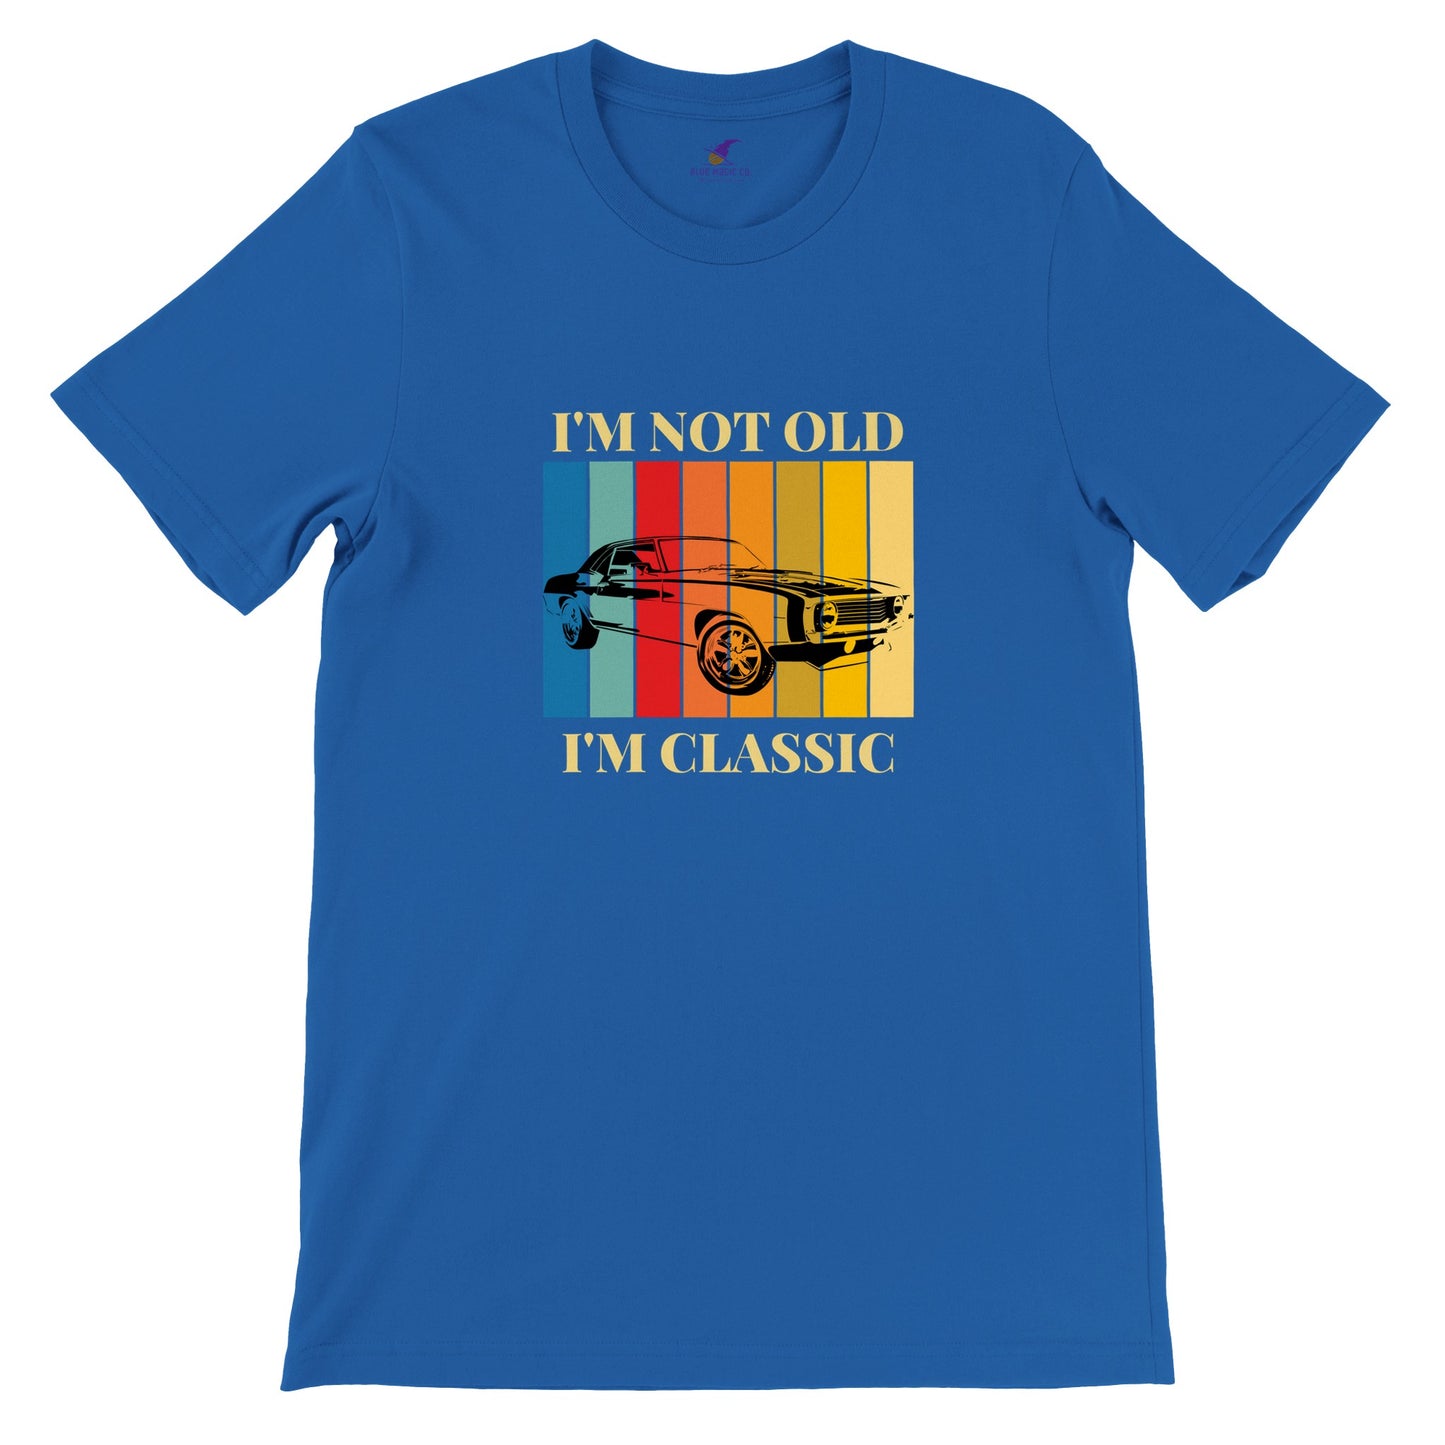 Premium Unisex "I'm Not Old" T-shirt